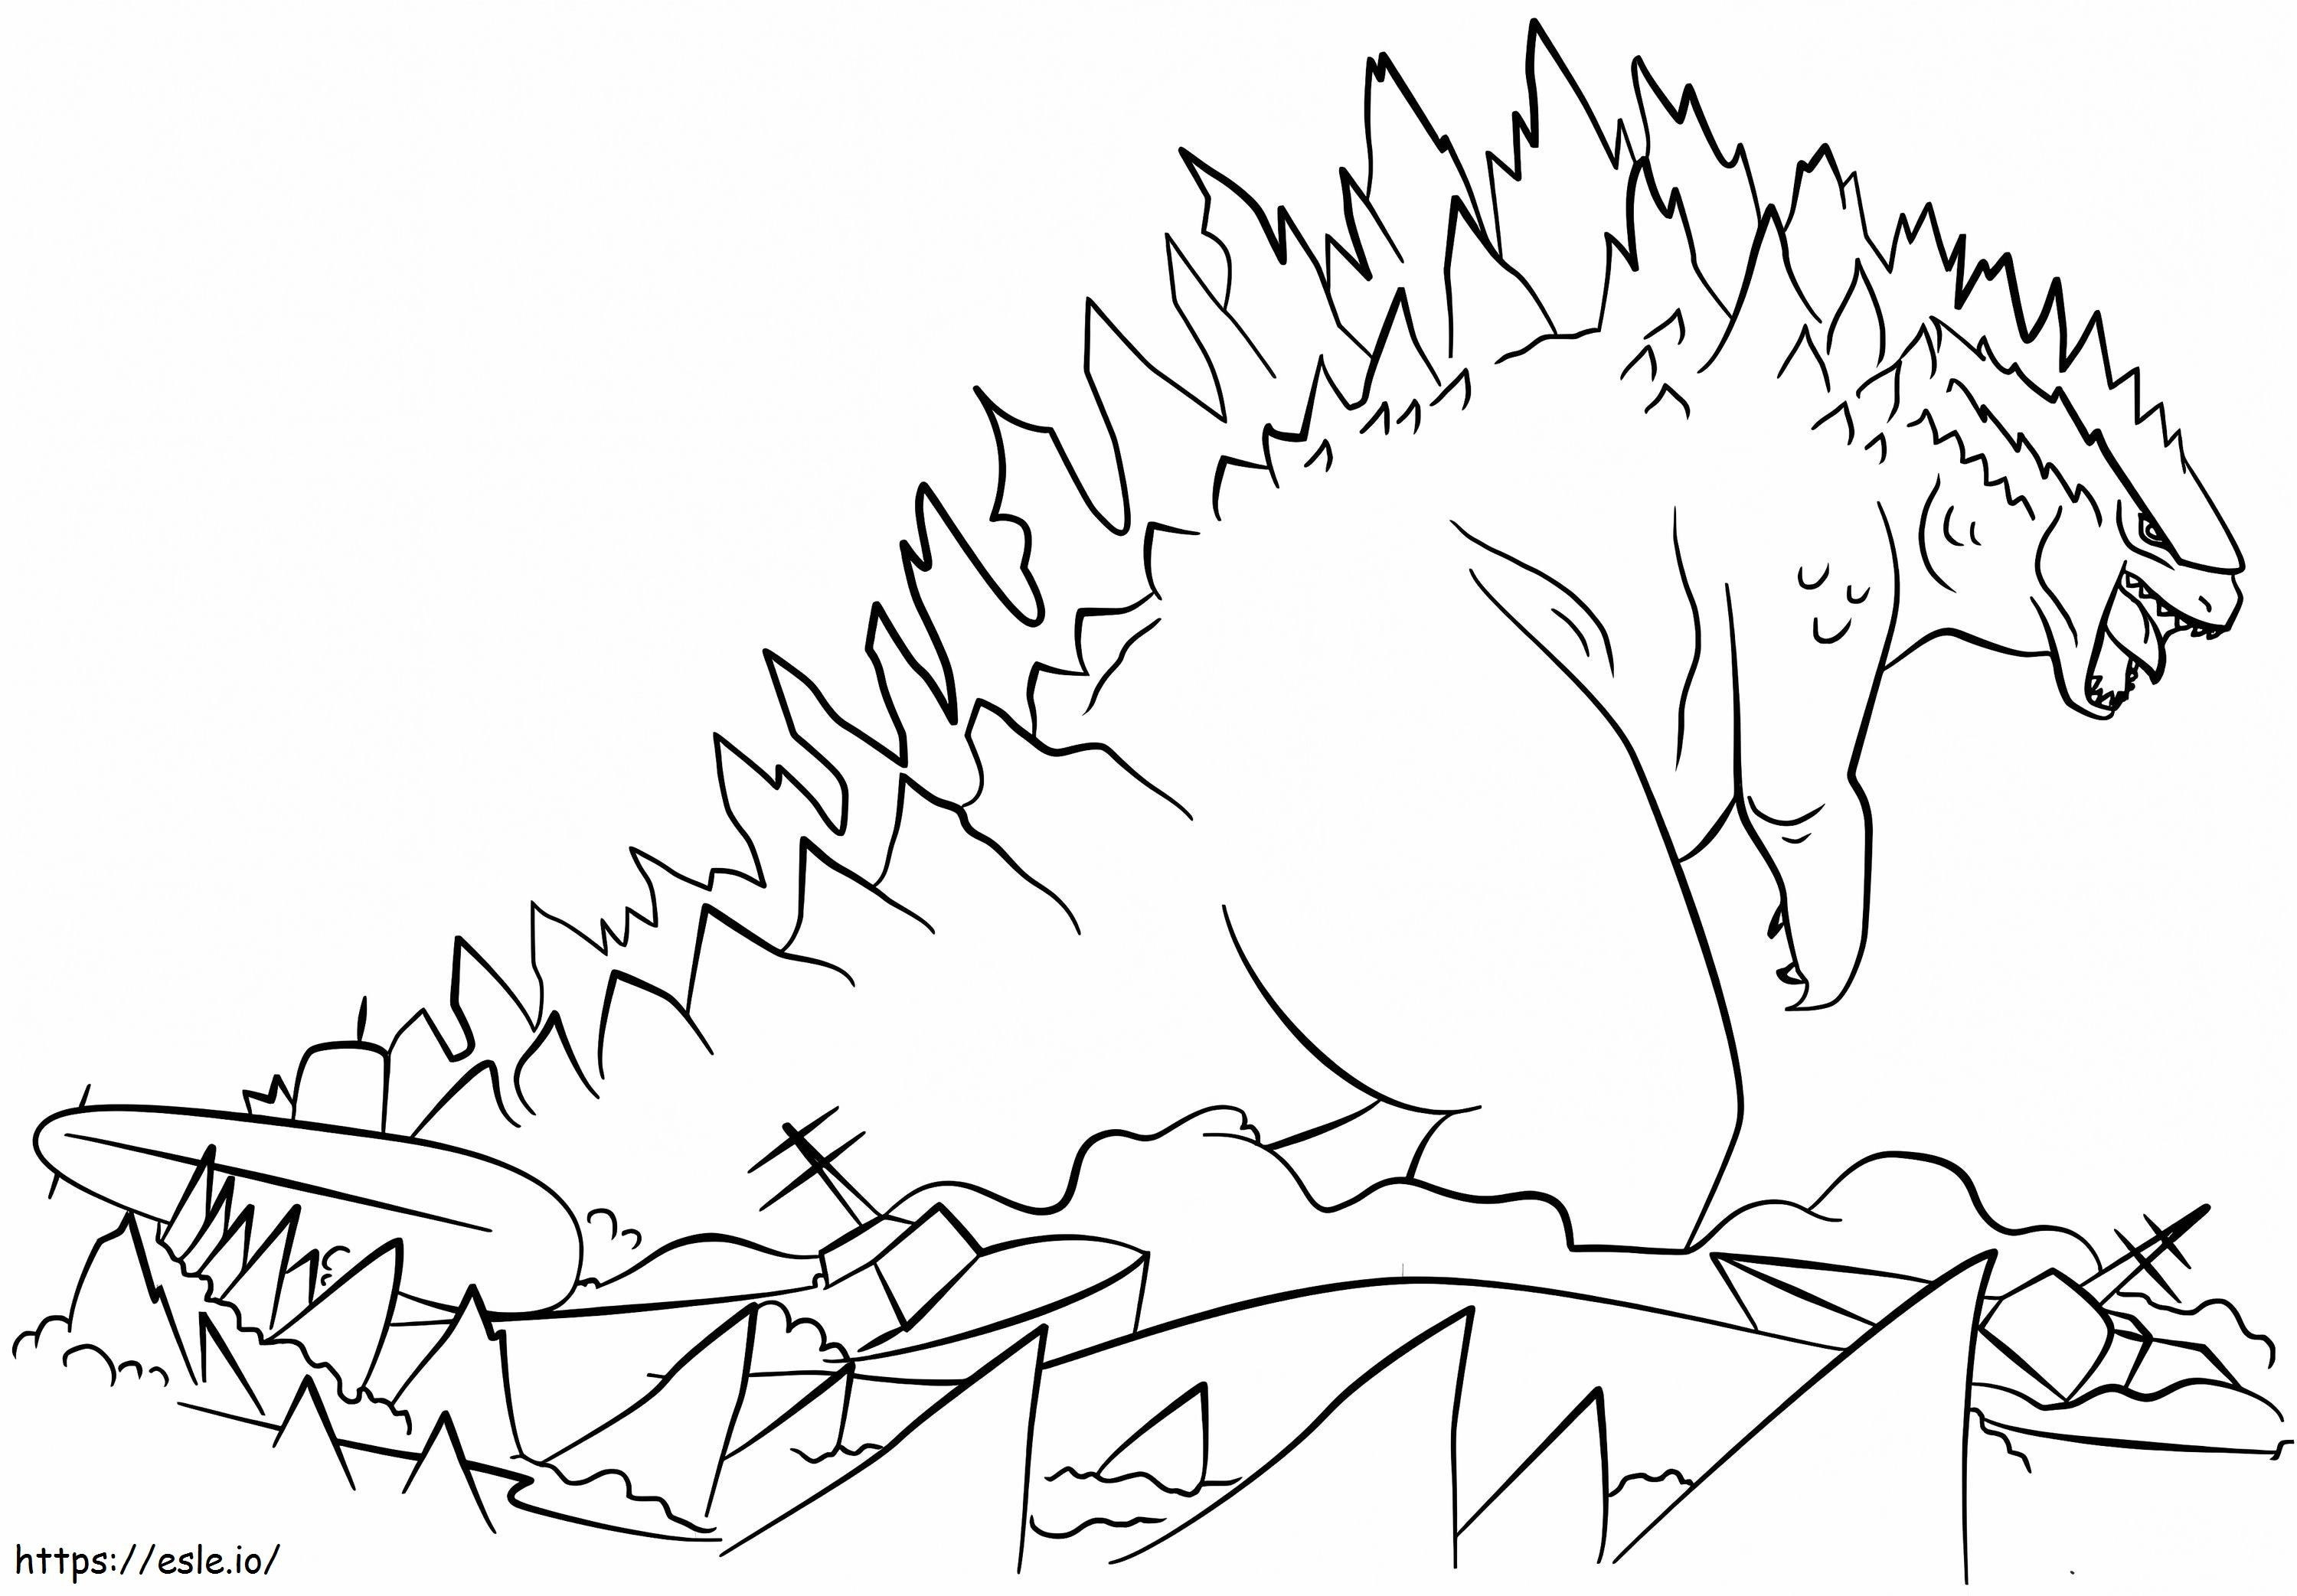 Godzilla 2 coloring page